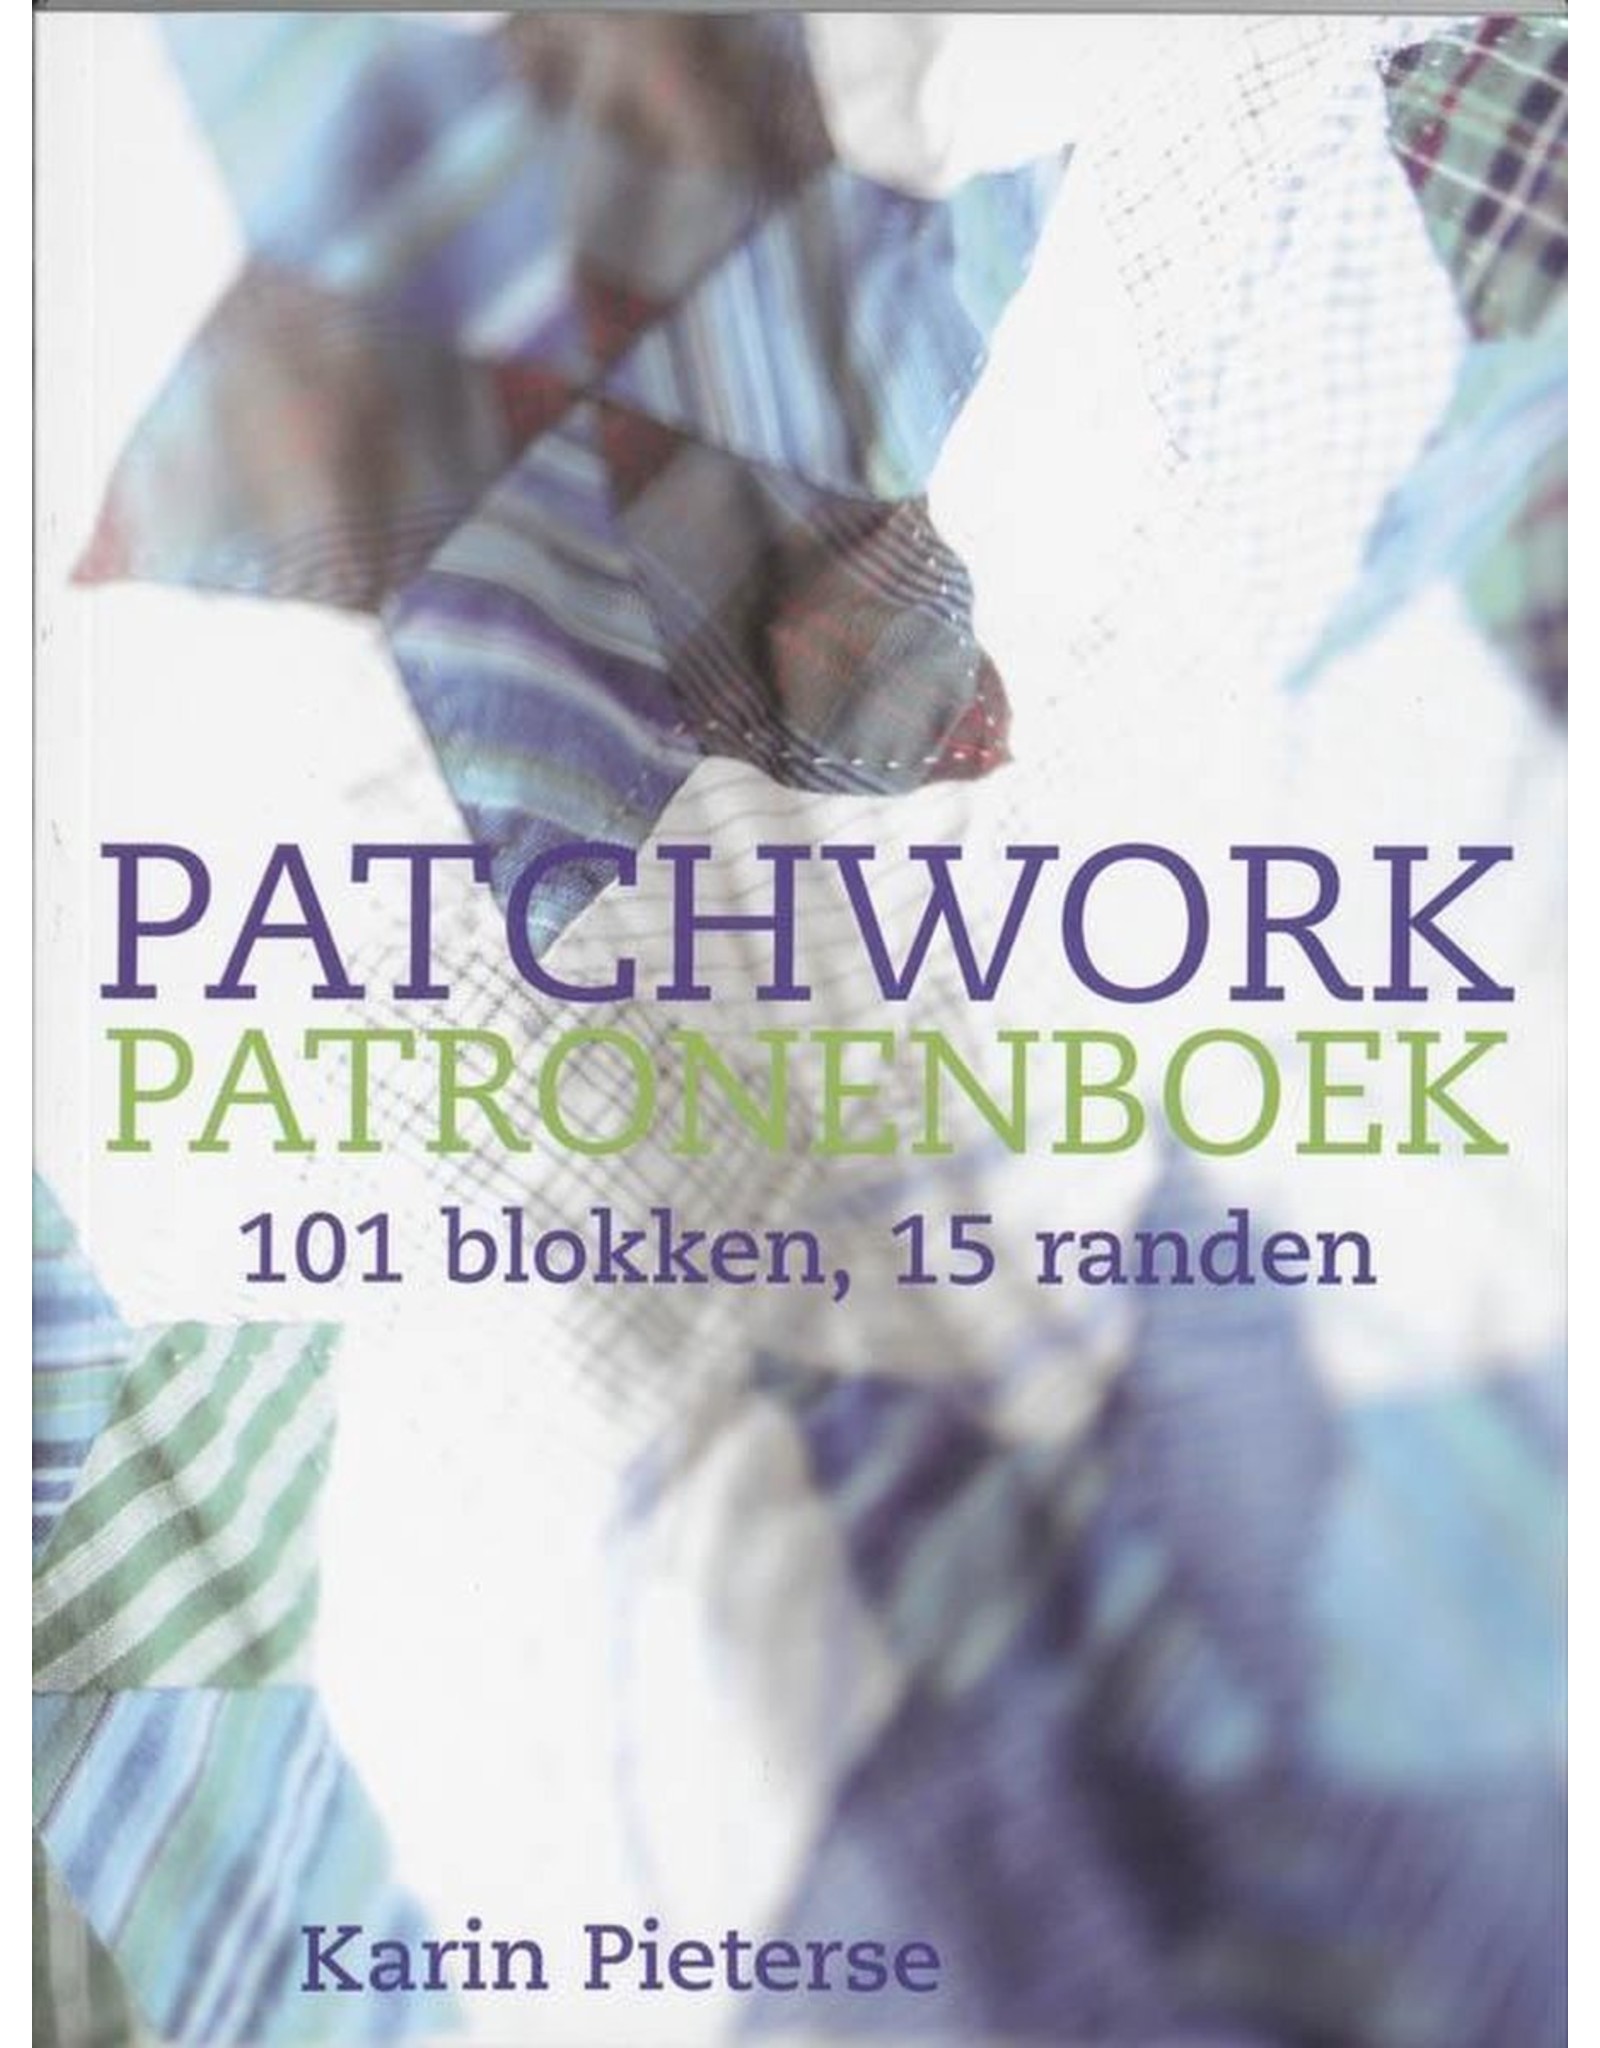 Boek: Patchwork patronenboek: 101 blokken, 15 randen